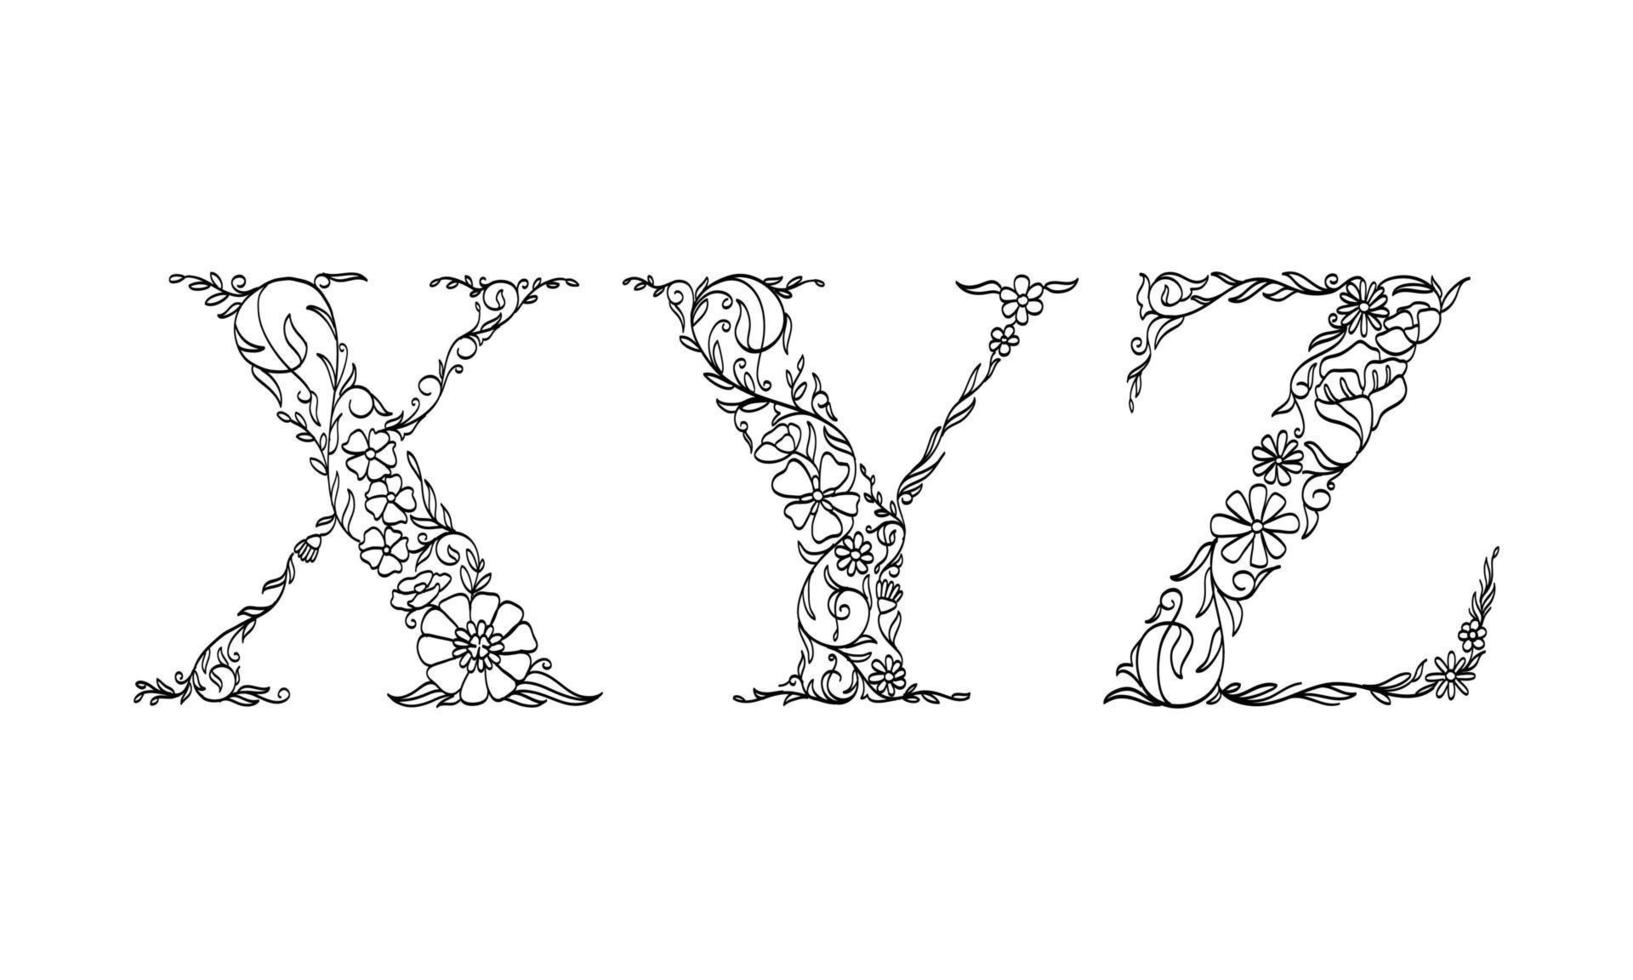 Ilustración floral alfabeto x, y, z, fuente gráfica de vector hecha por flores y hojas, arte lineal creativo dibujado a mano para la naturaleza abstracta y natural que se ve en una decoración de diseño monocromático único